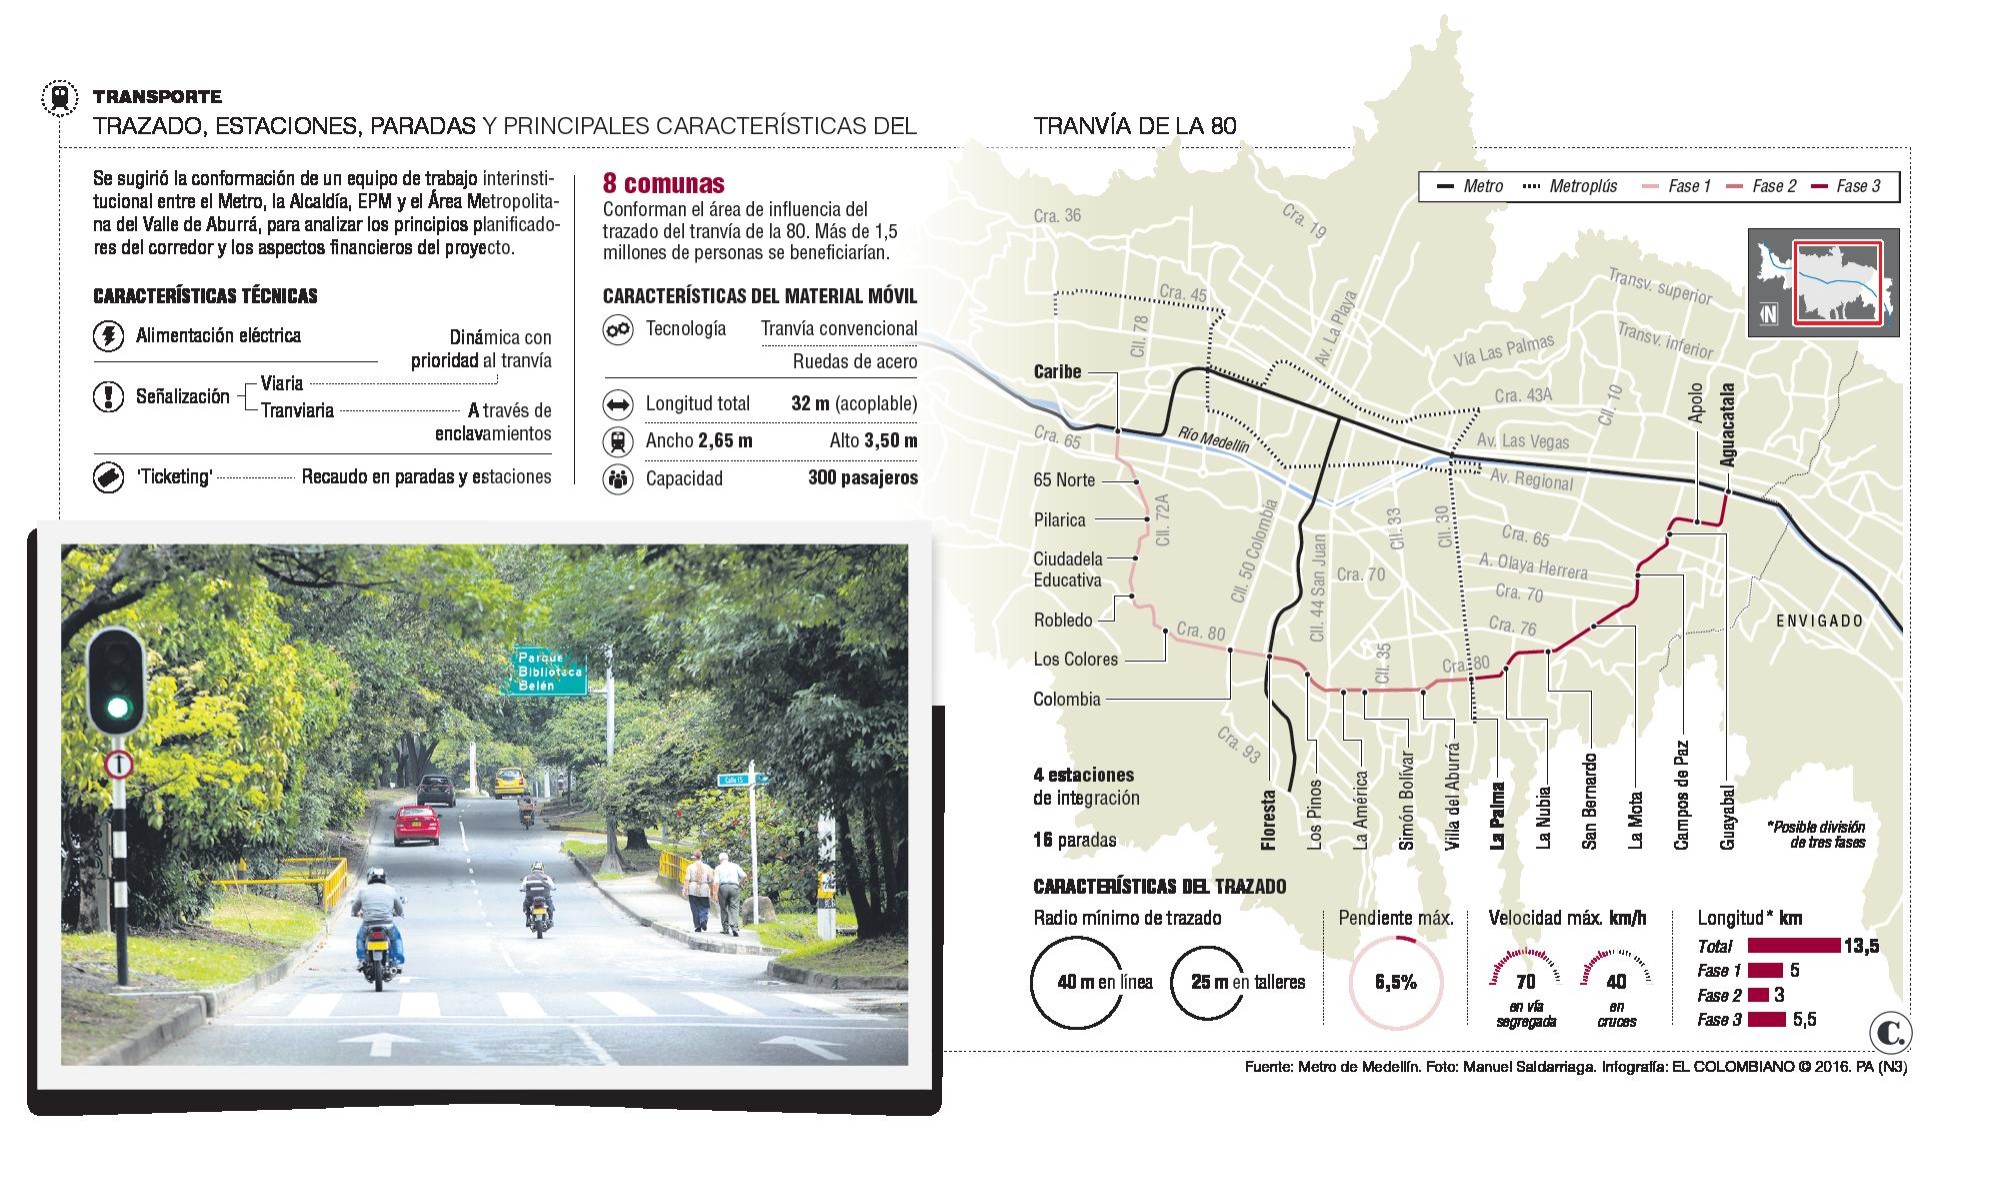 El tranvía de la 80 en Medellín será como un metro ligero